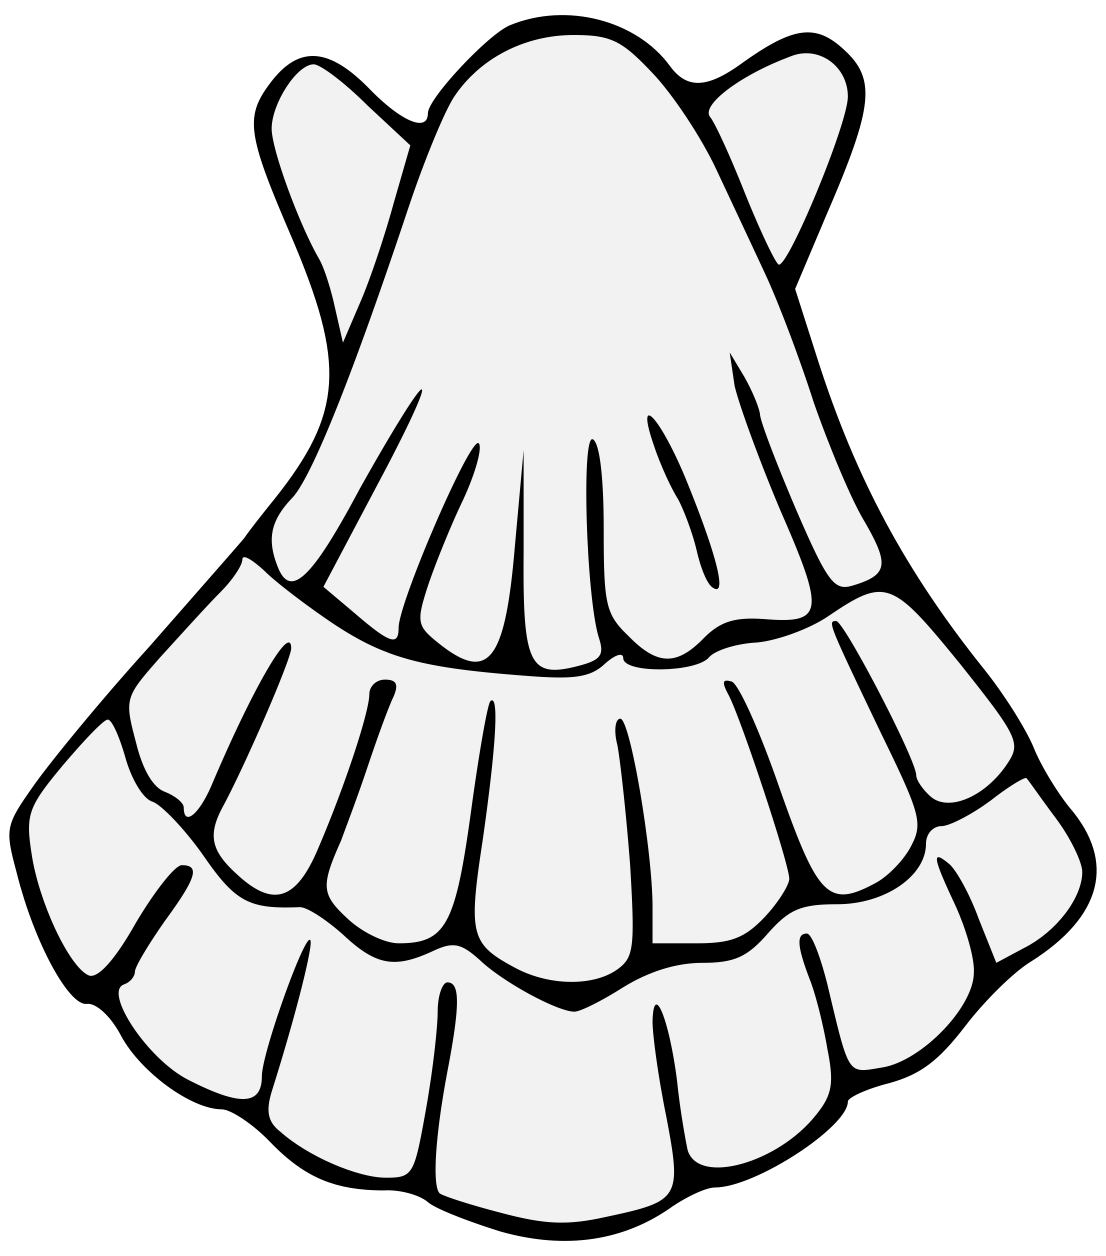 Shell clipart escallop. Traceable heraldic art pdf